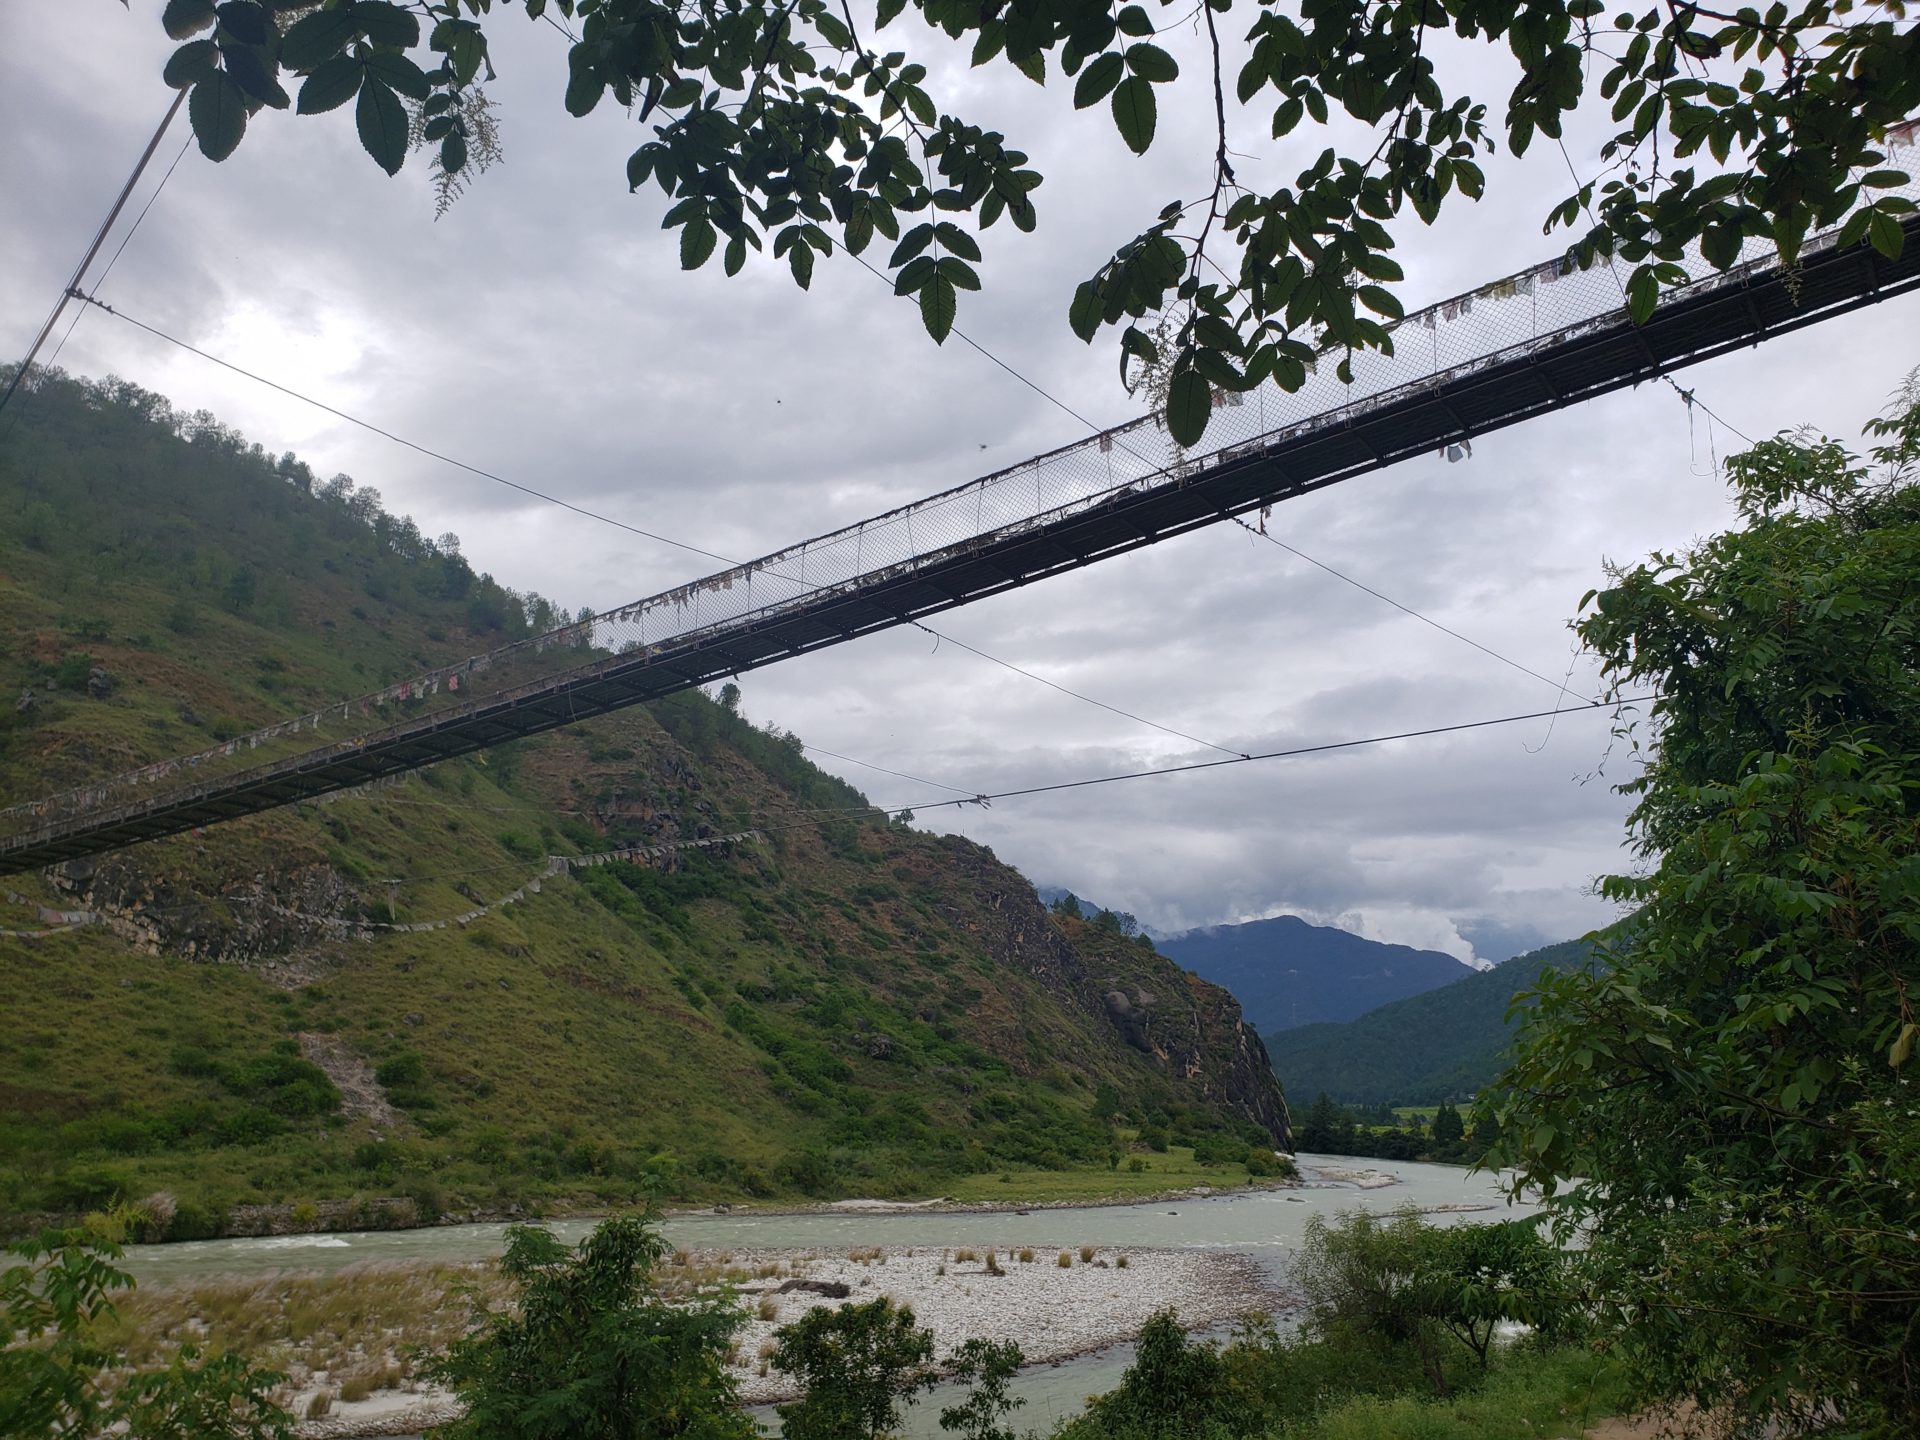 a suspension bridge over a river